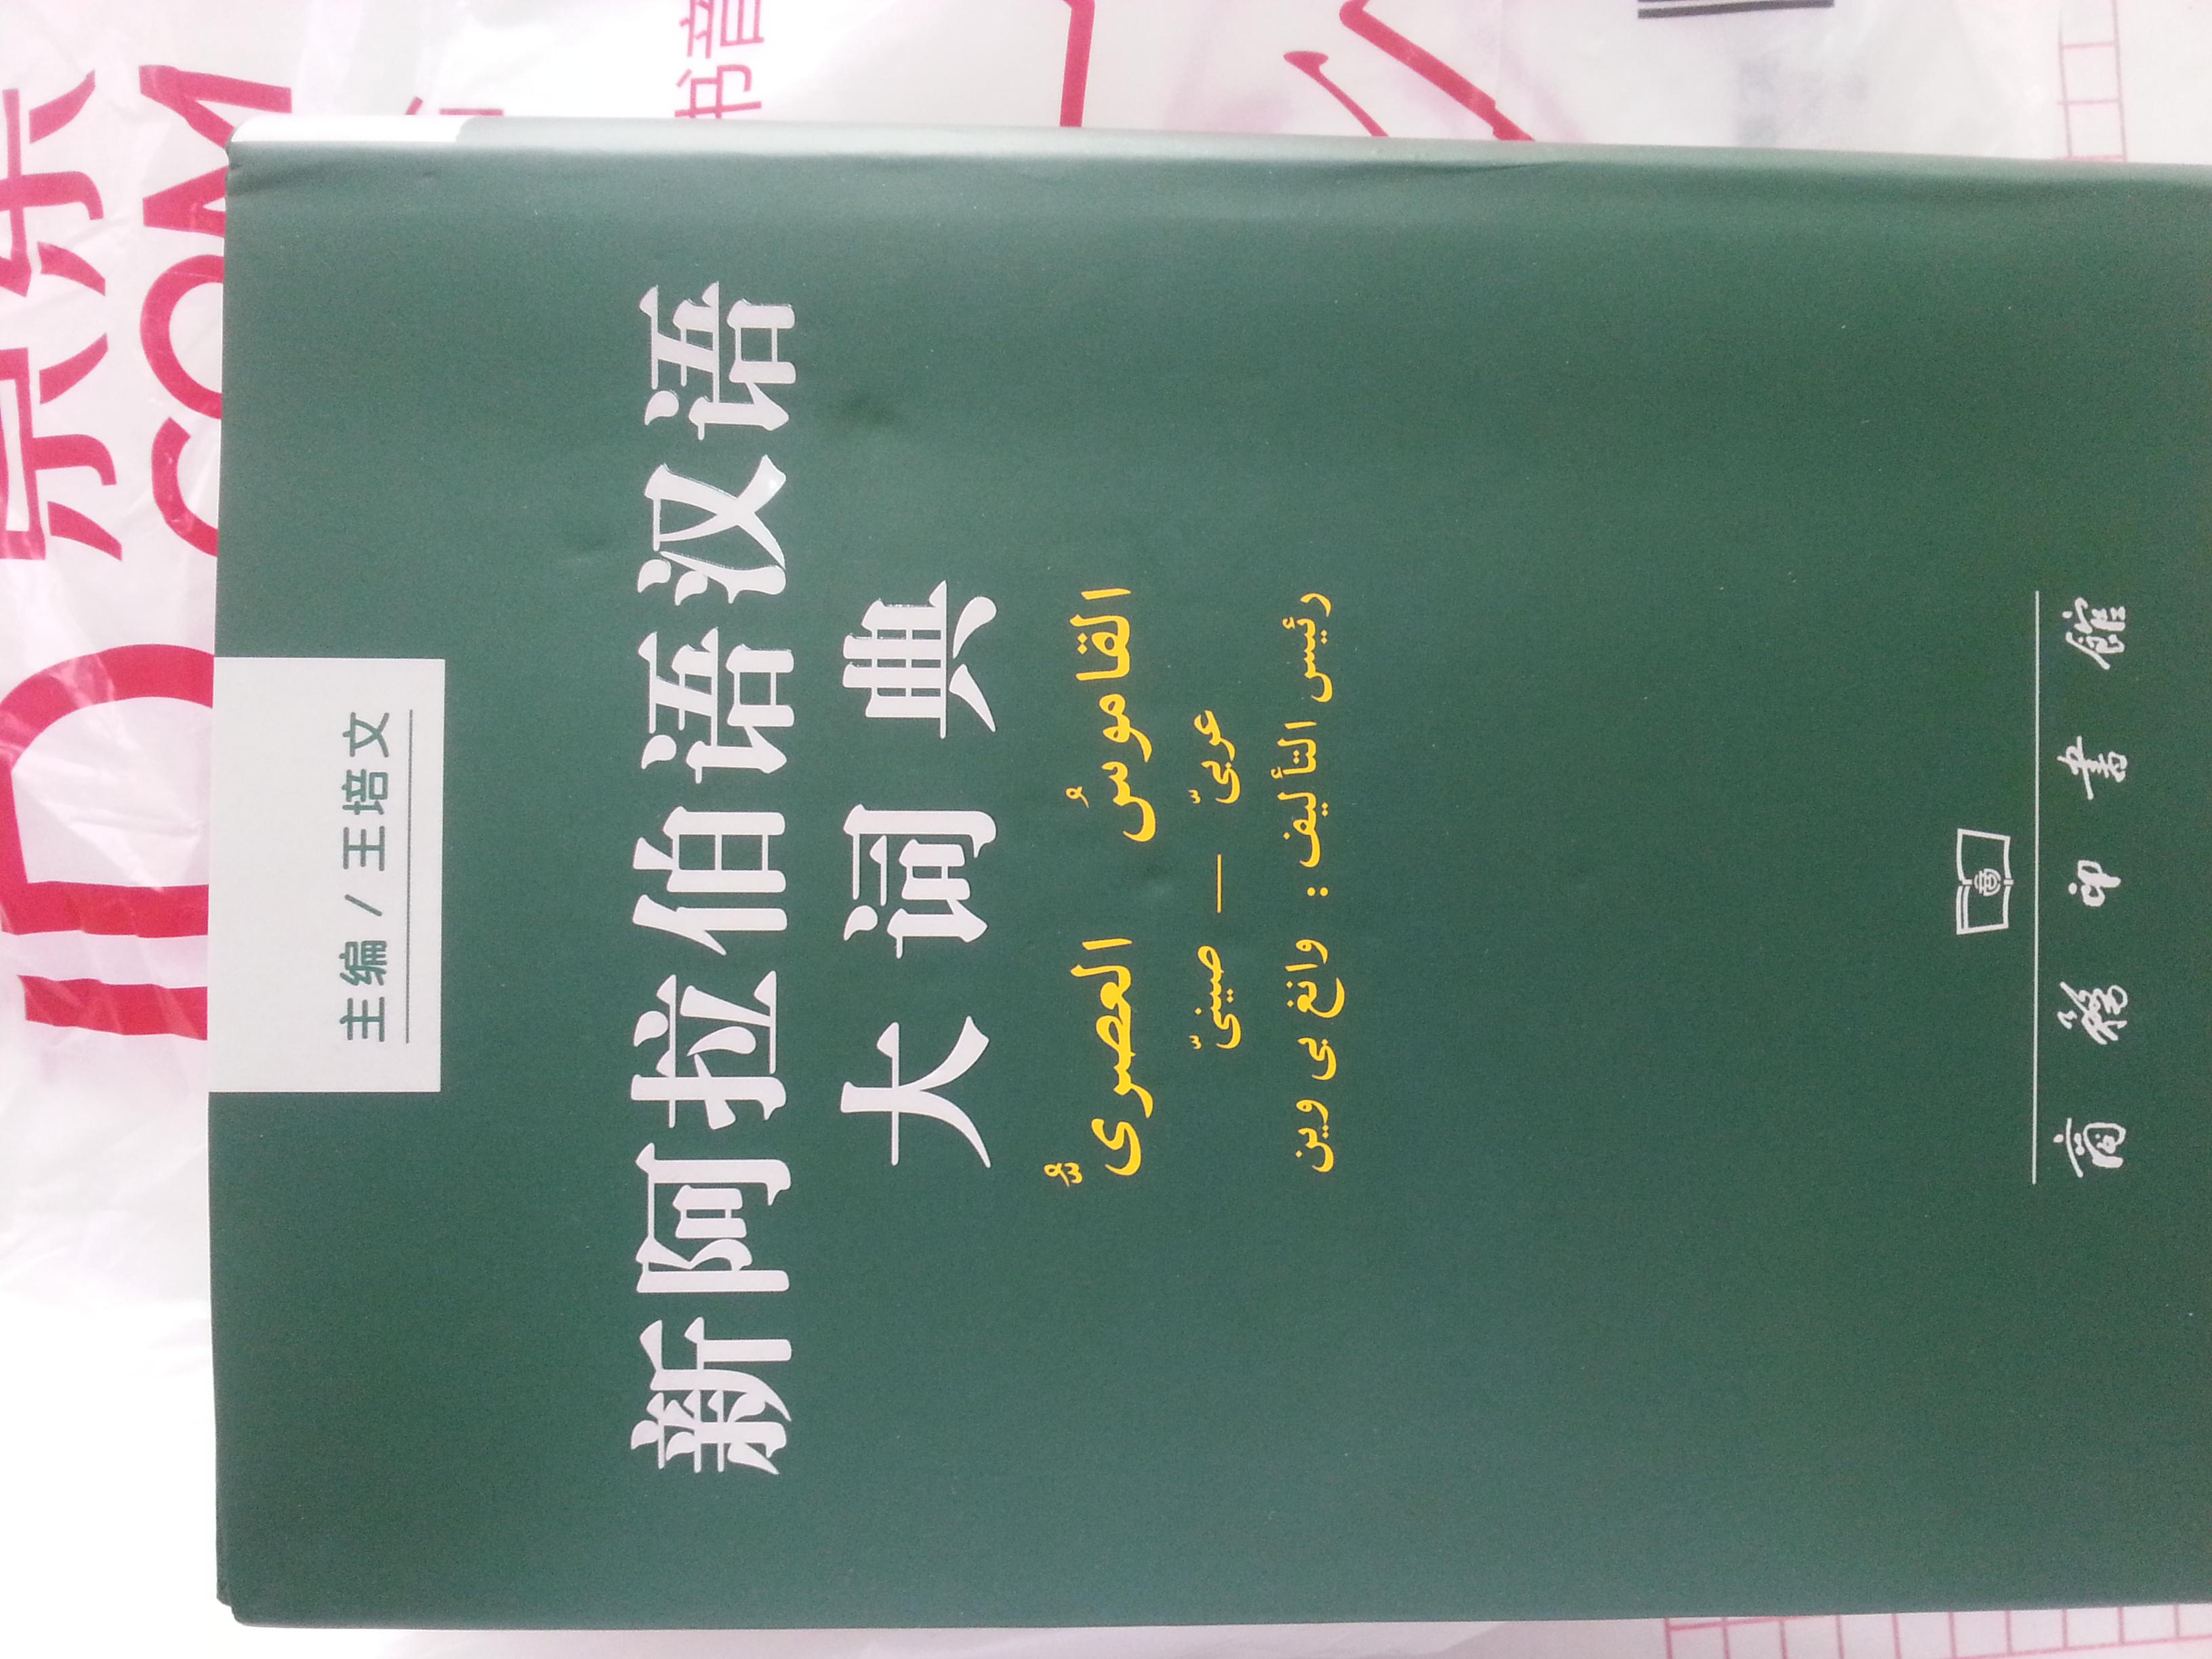 1.新阿拉伯语汉语大词典--不新   2000年前编写的，2003年印刷的版本，如今10多年了，貌似有许多词汇需要增补吧。2.正文第一页的“丨”竟然没印上！有点说不过去。